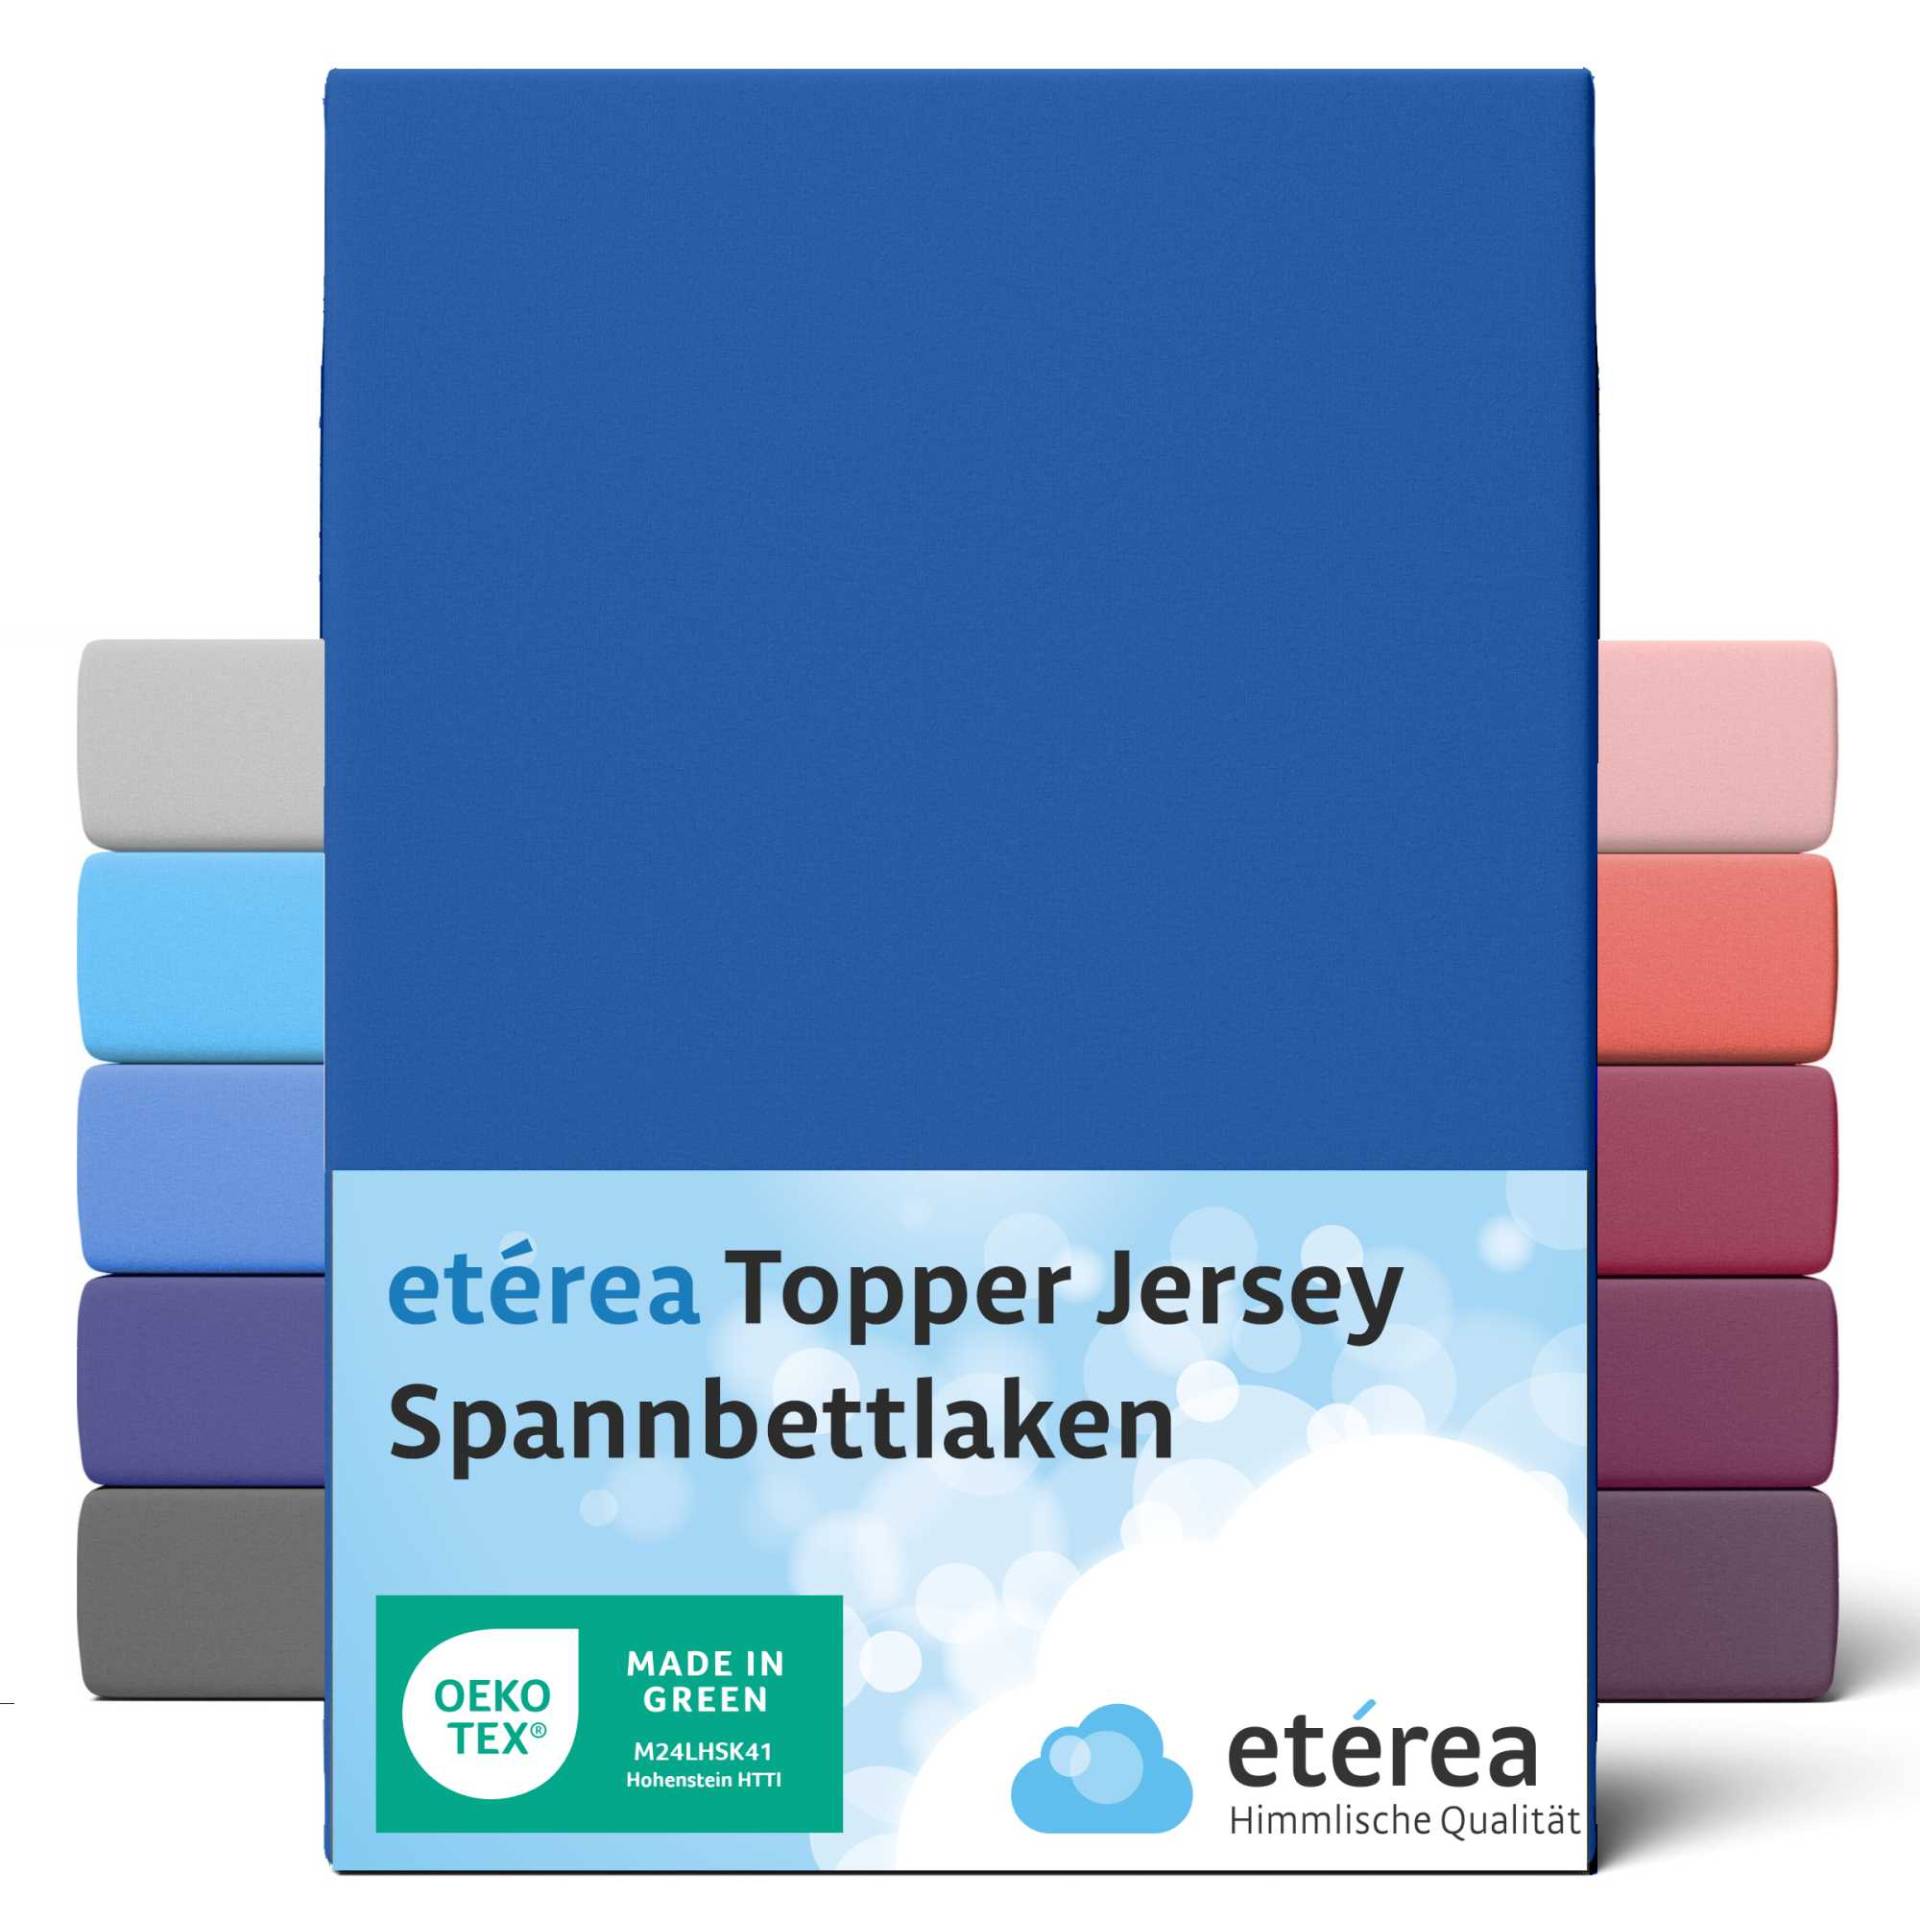 etérea Jersey Topper Spannbettlaken Spannbetttuch Blau 90x200 - 100x200 cm von etérea Himmlische Qualität